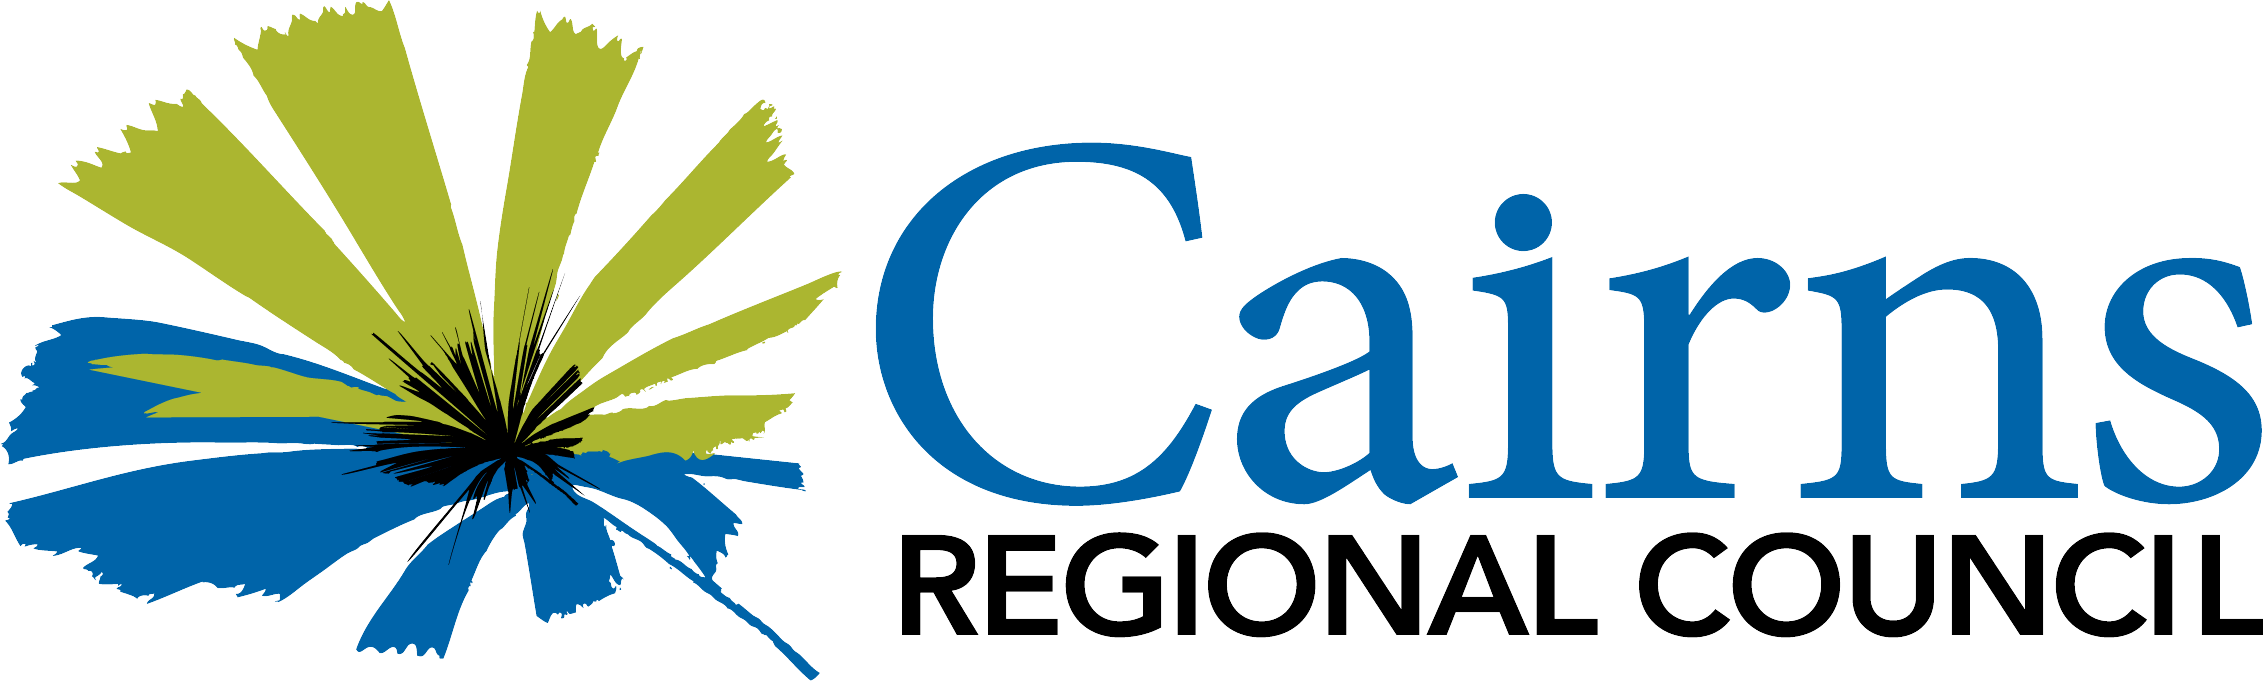 Cairns Regional Council Logo